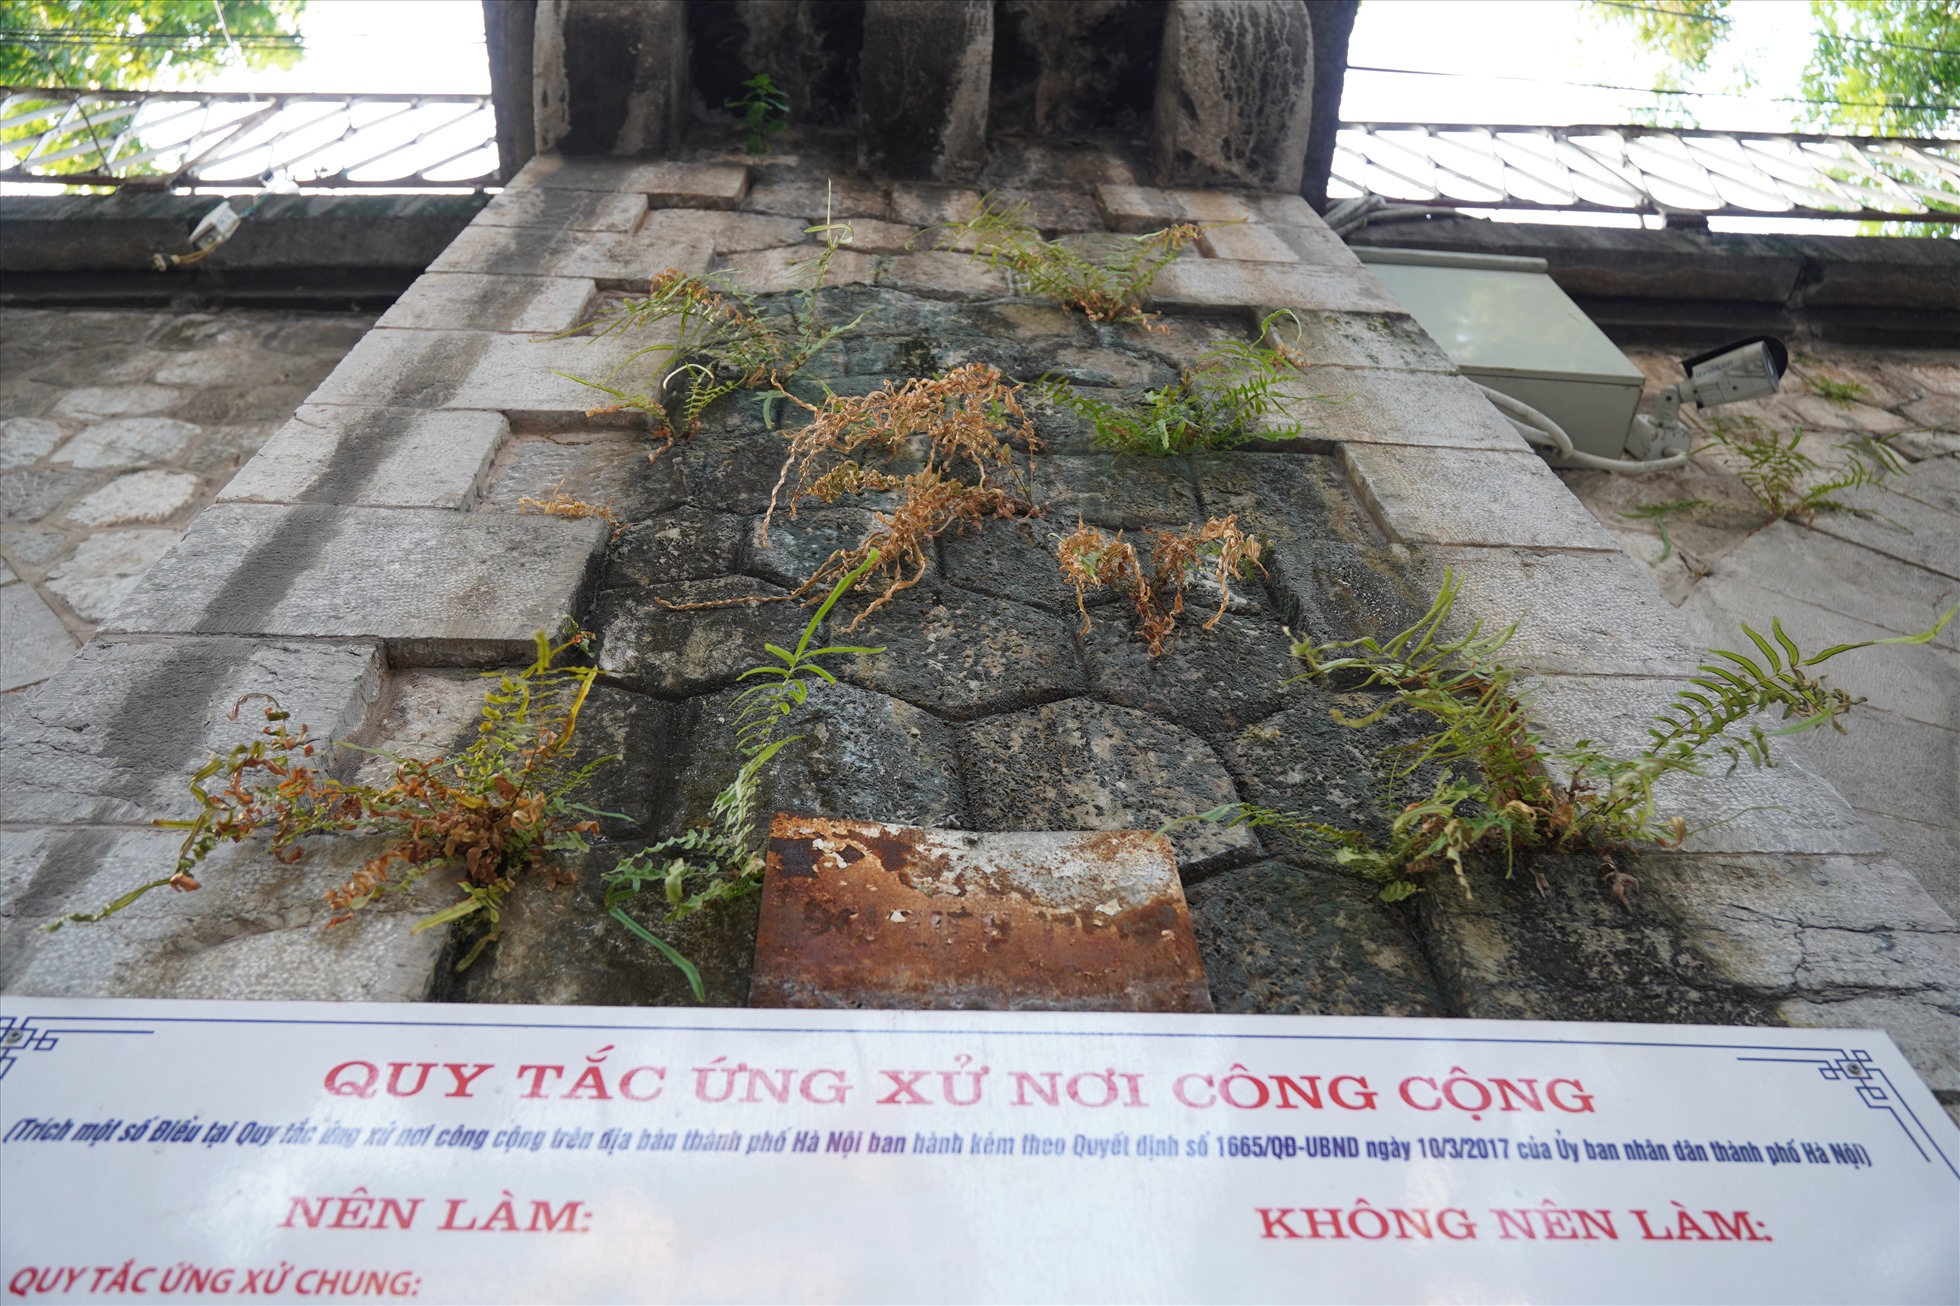 Phố bích họa Phùng Hưng, nơi check in nổi tiếng Hà Nội phai màu, xuống cấp - Ảnh 2.